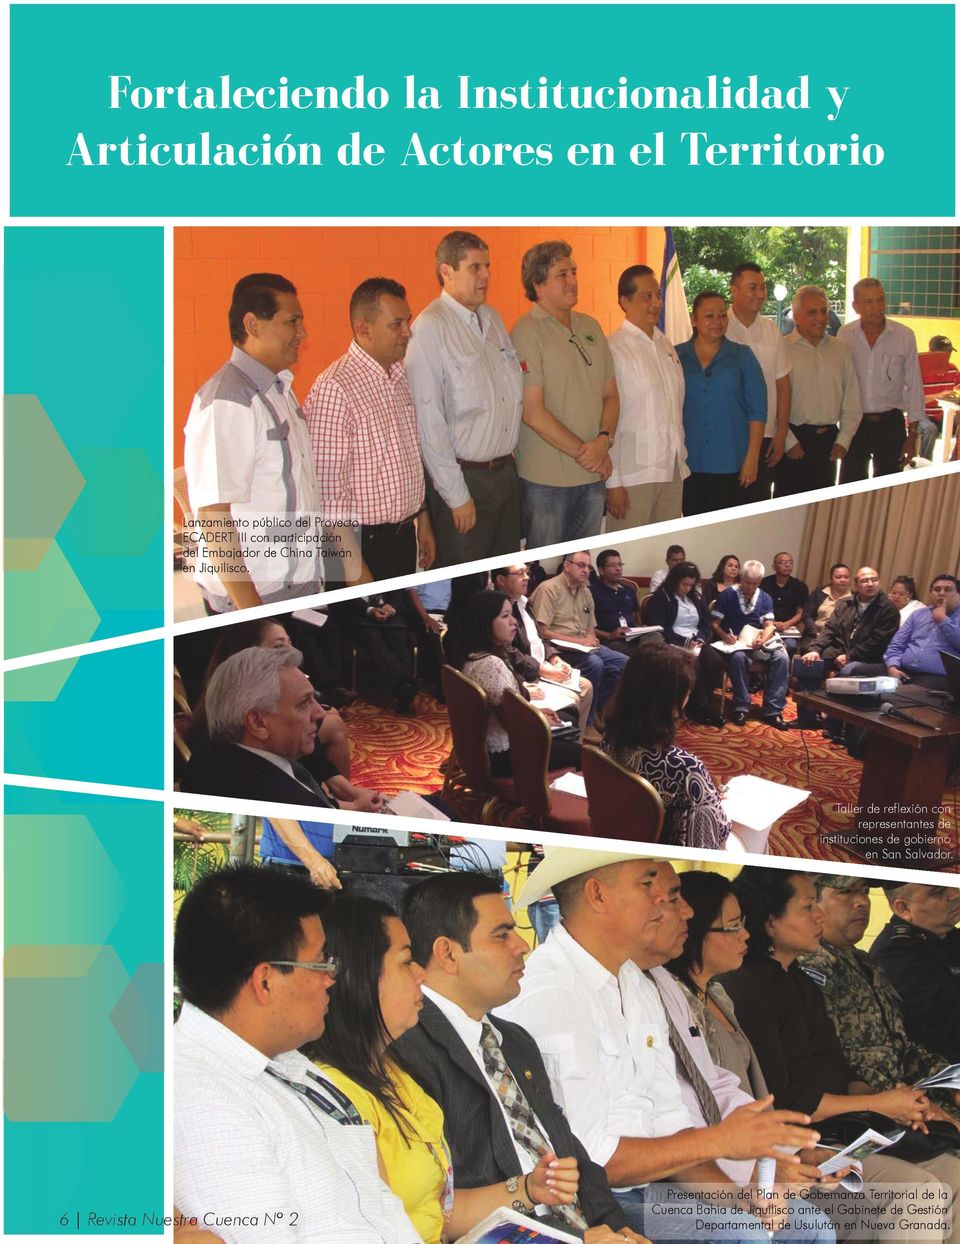 Taller de reflexión con representantes de instituciones de gobierno en San Salvador.